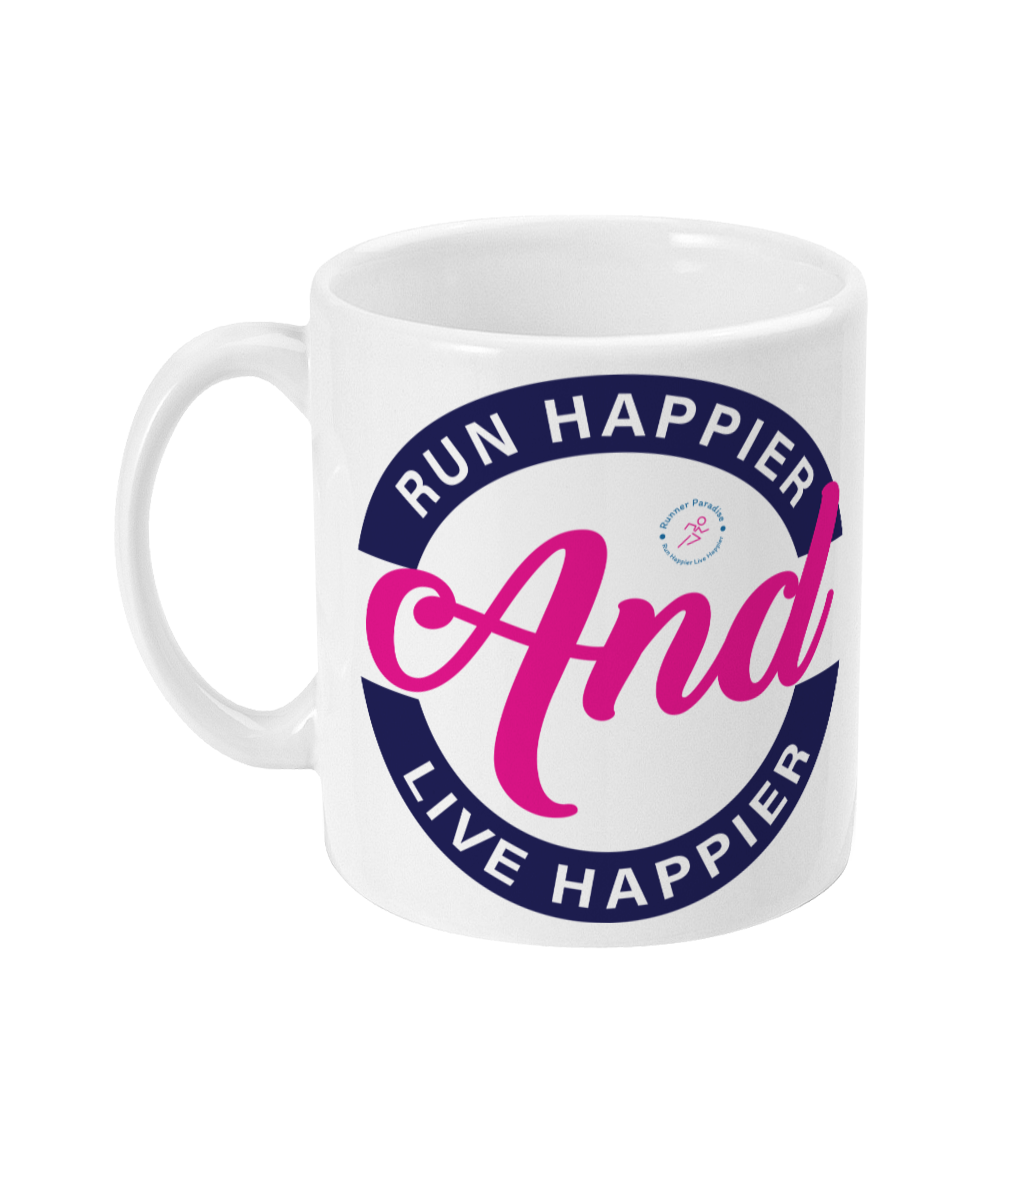 Runner Mug, Runner Gift, Running Mug, Gift For Runner, Running Gift, Marathon Mug, Marathon Gift, Marathon Runner Gift, Marathon Runner Mug